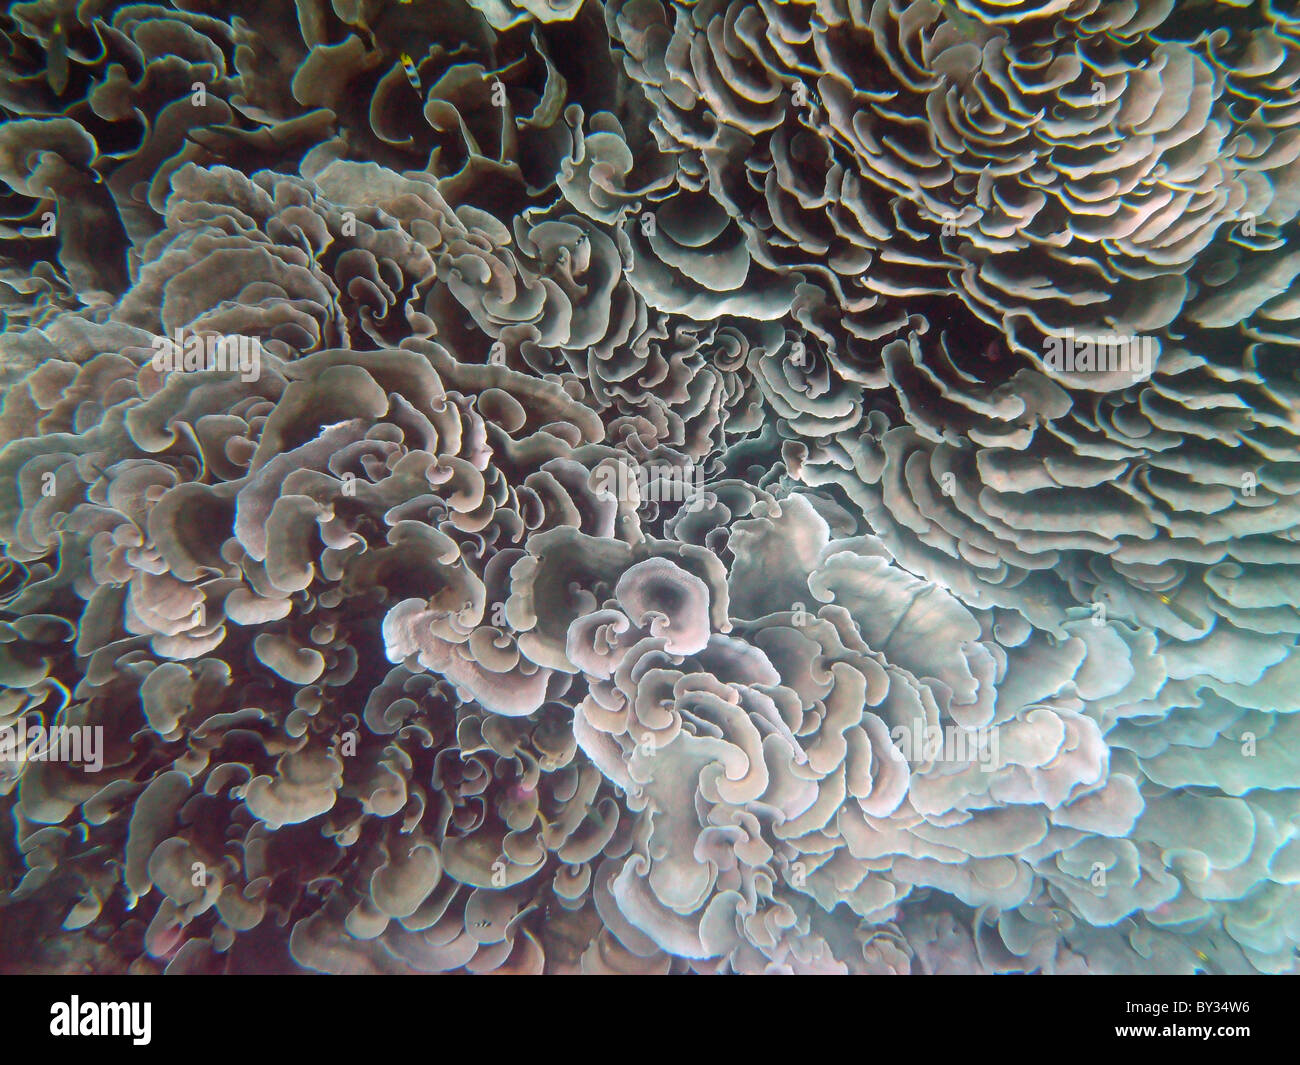 Echinopora lamellaire ( ?) des coraux dans le Trou Bleu, Cocos Keeling lagoon, de l'Océan Indien Banque D'Images